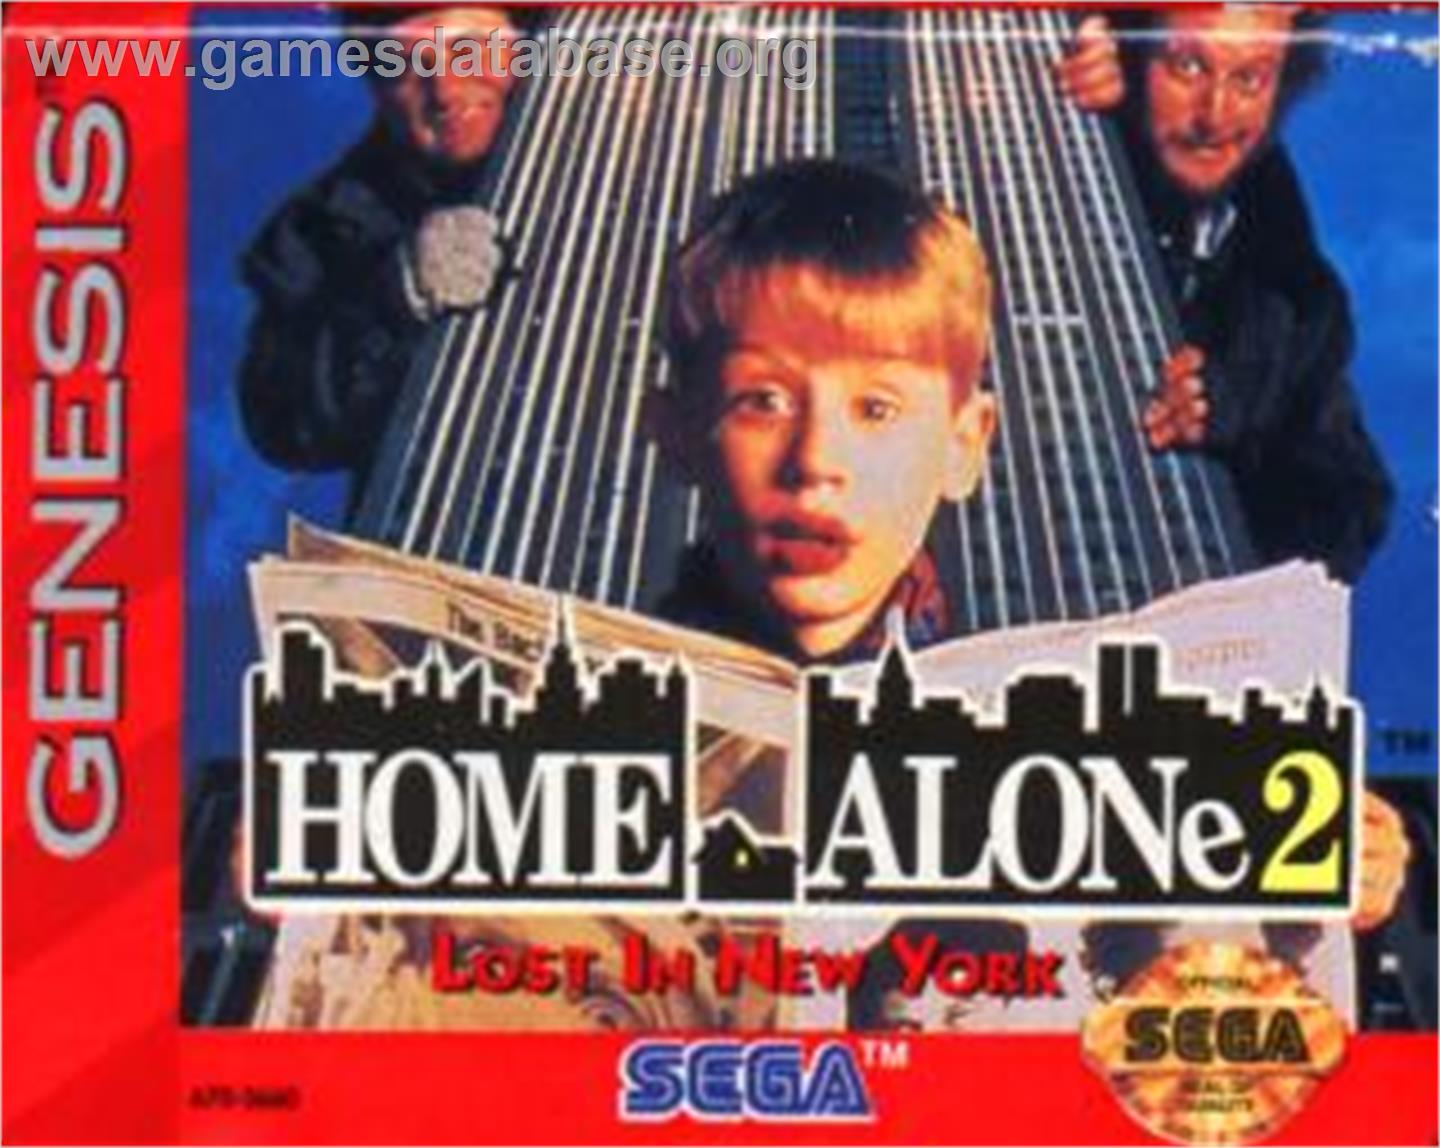 Home Alone 2 - Lost in New York - Sega Nomad - Artwork - Cartridge